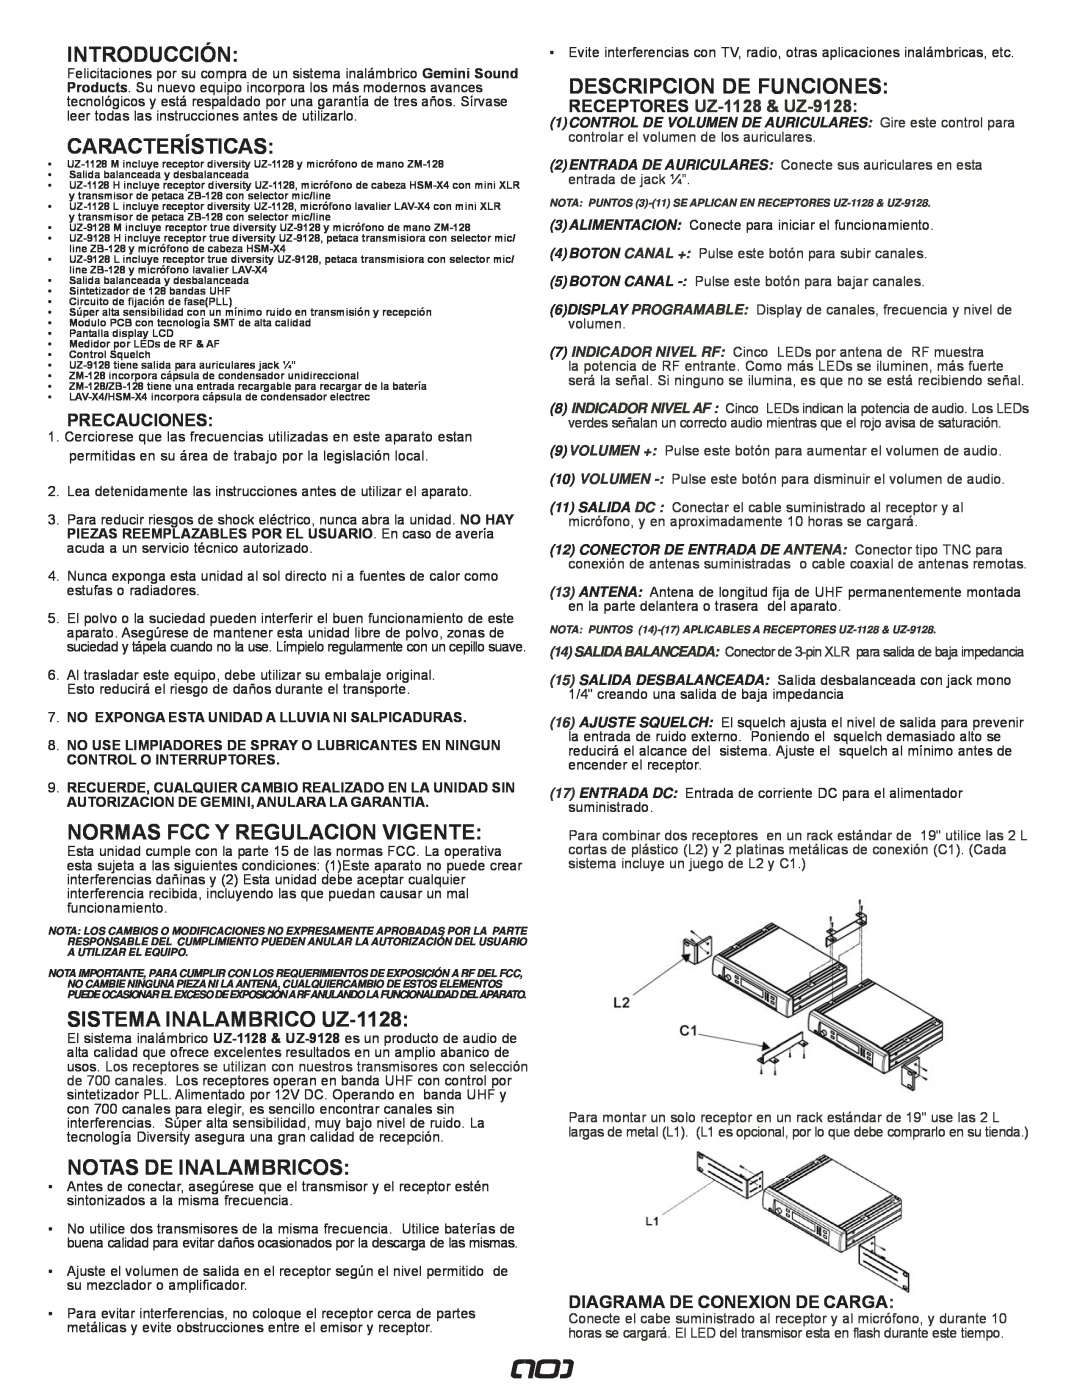 Gemini UZ-9128 Introducción, Características, Normas Fcc Y Regulacion Vigente, SISTEMA INALAMBRICO UZ-1128, Precauciones 